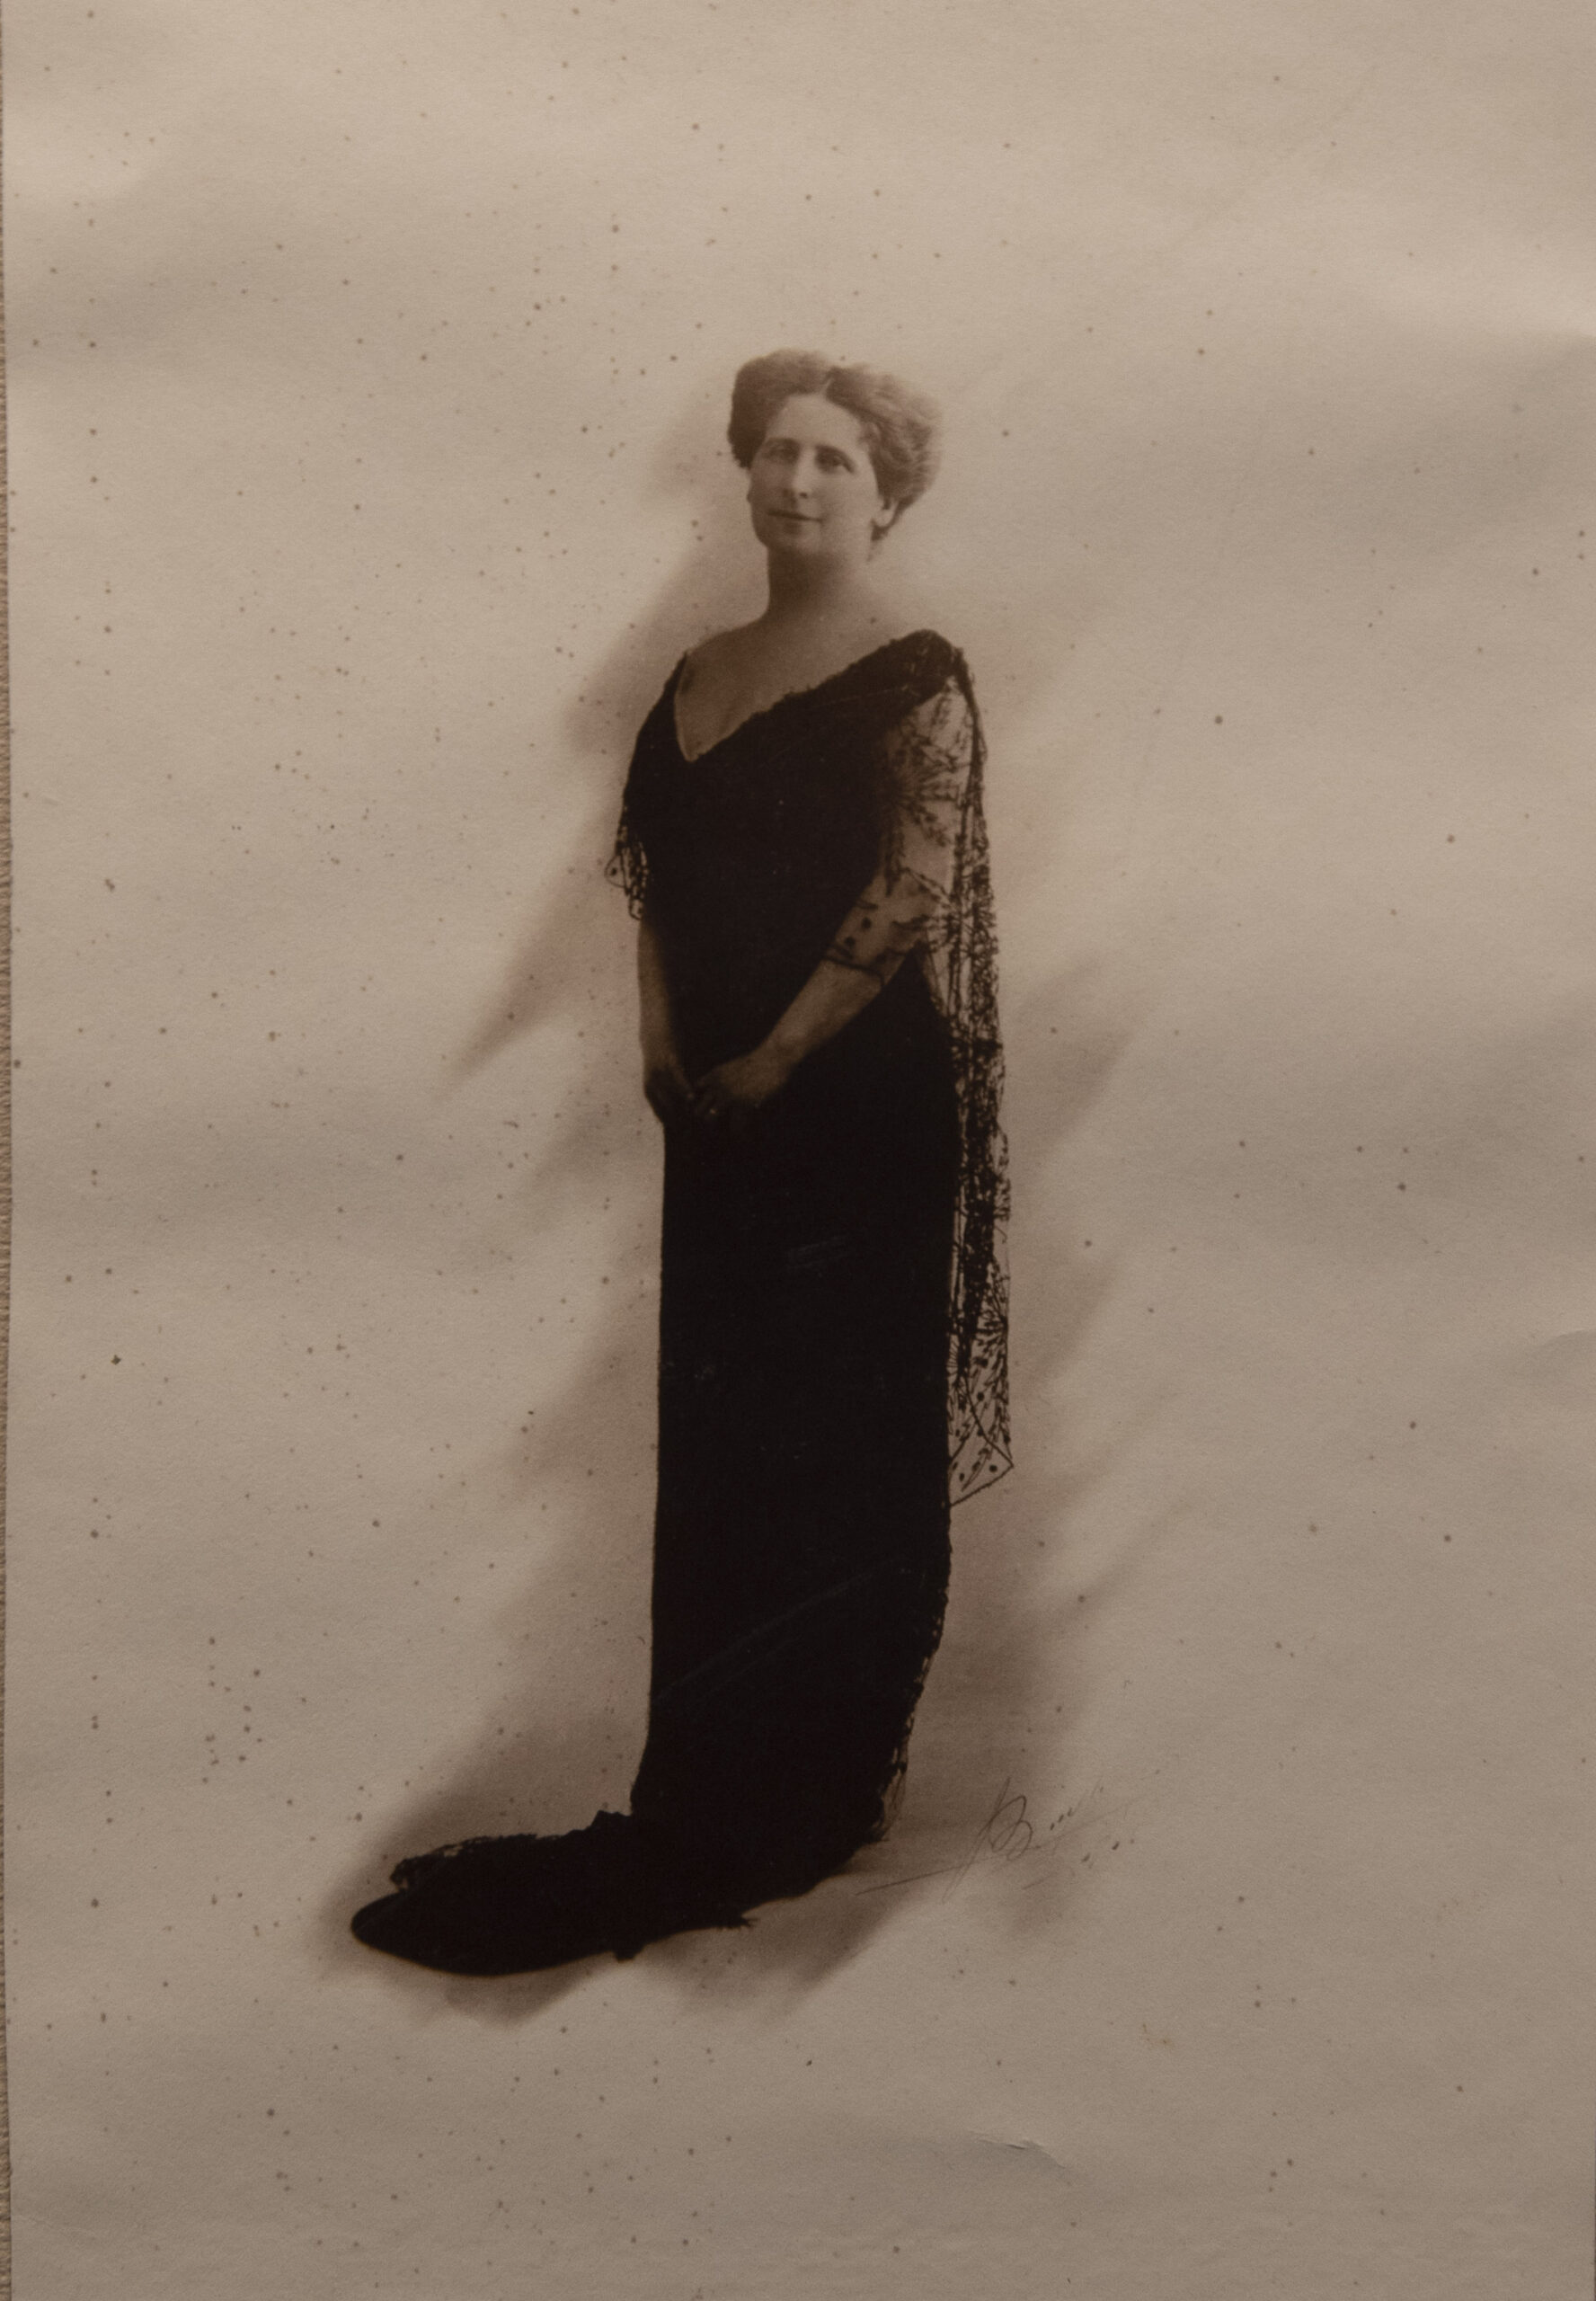 Isabella Errera-Goldschmidt (Florence, 5 avril 1869 – Bruxelles, 23 juin 1929), fondatrice et animatrice de l’Œuvre d’assistance aux prisonniers italiens déportés en Belgique.